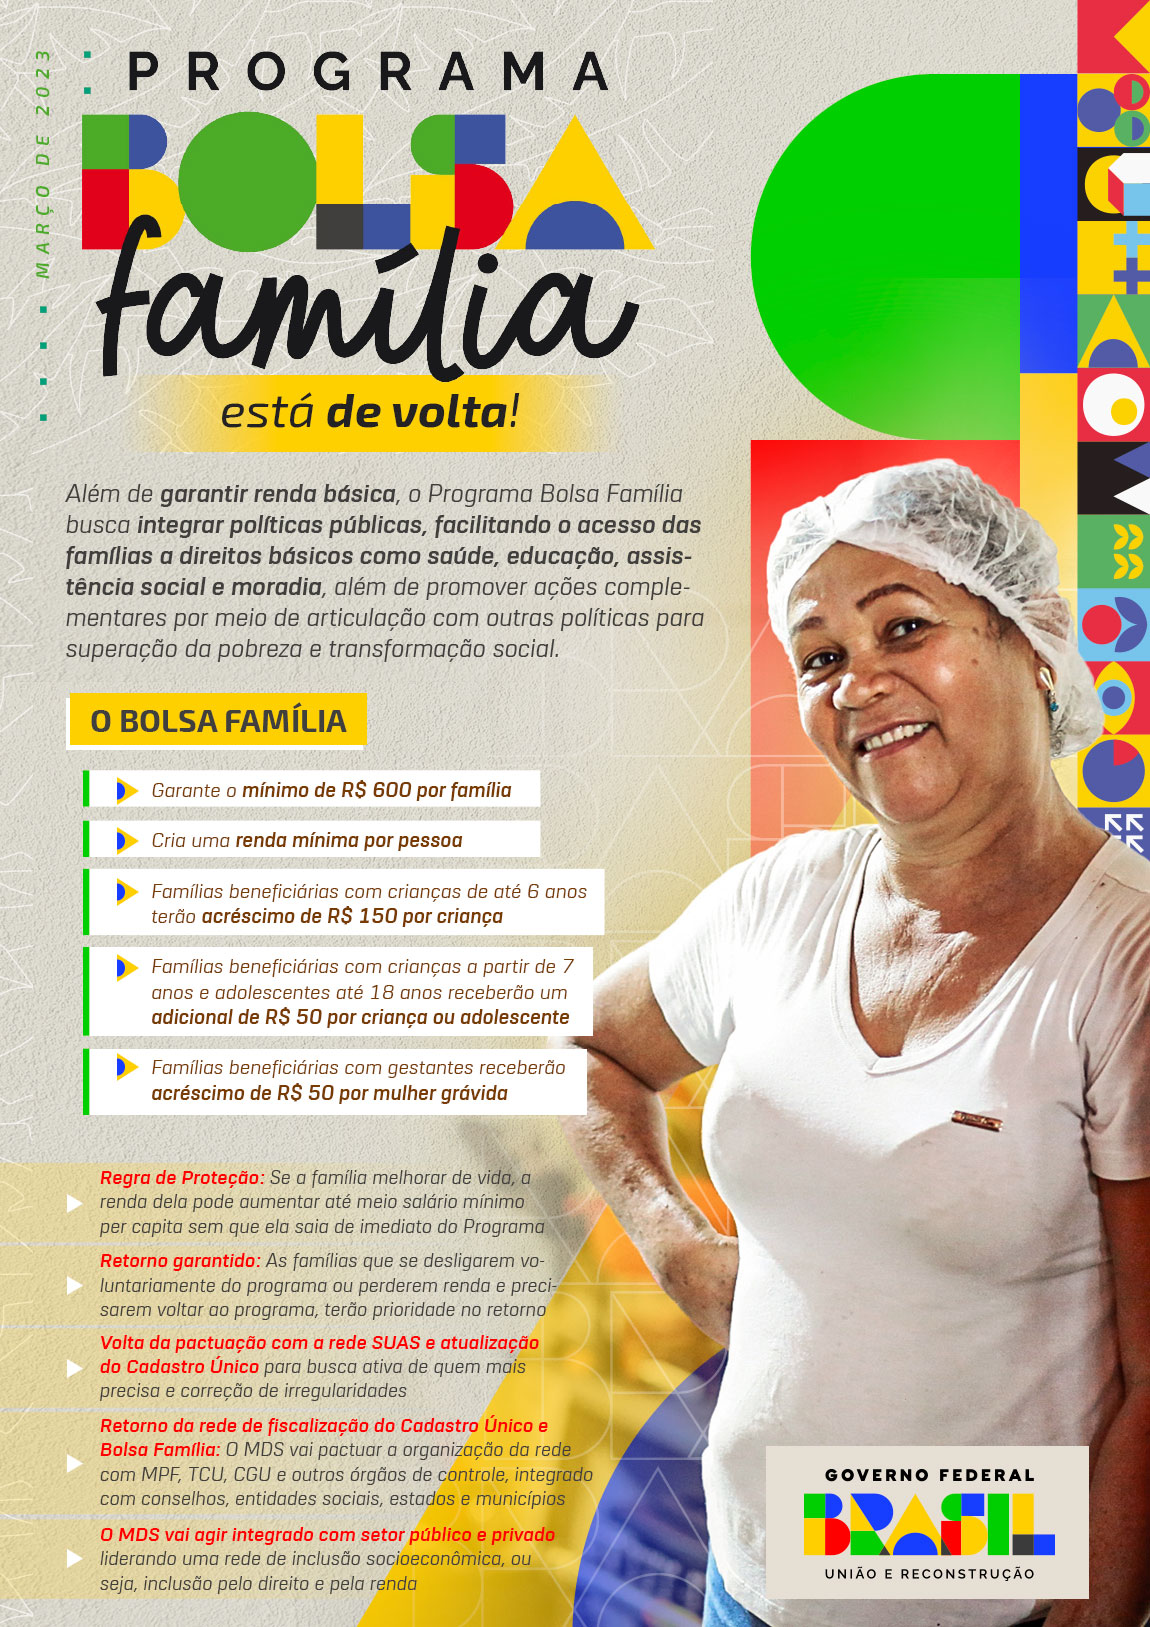 Ilustração do Governo Federal referente ao programa Bolsa Família.